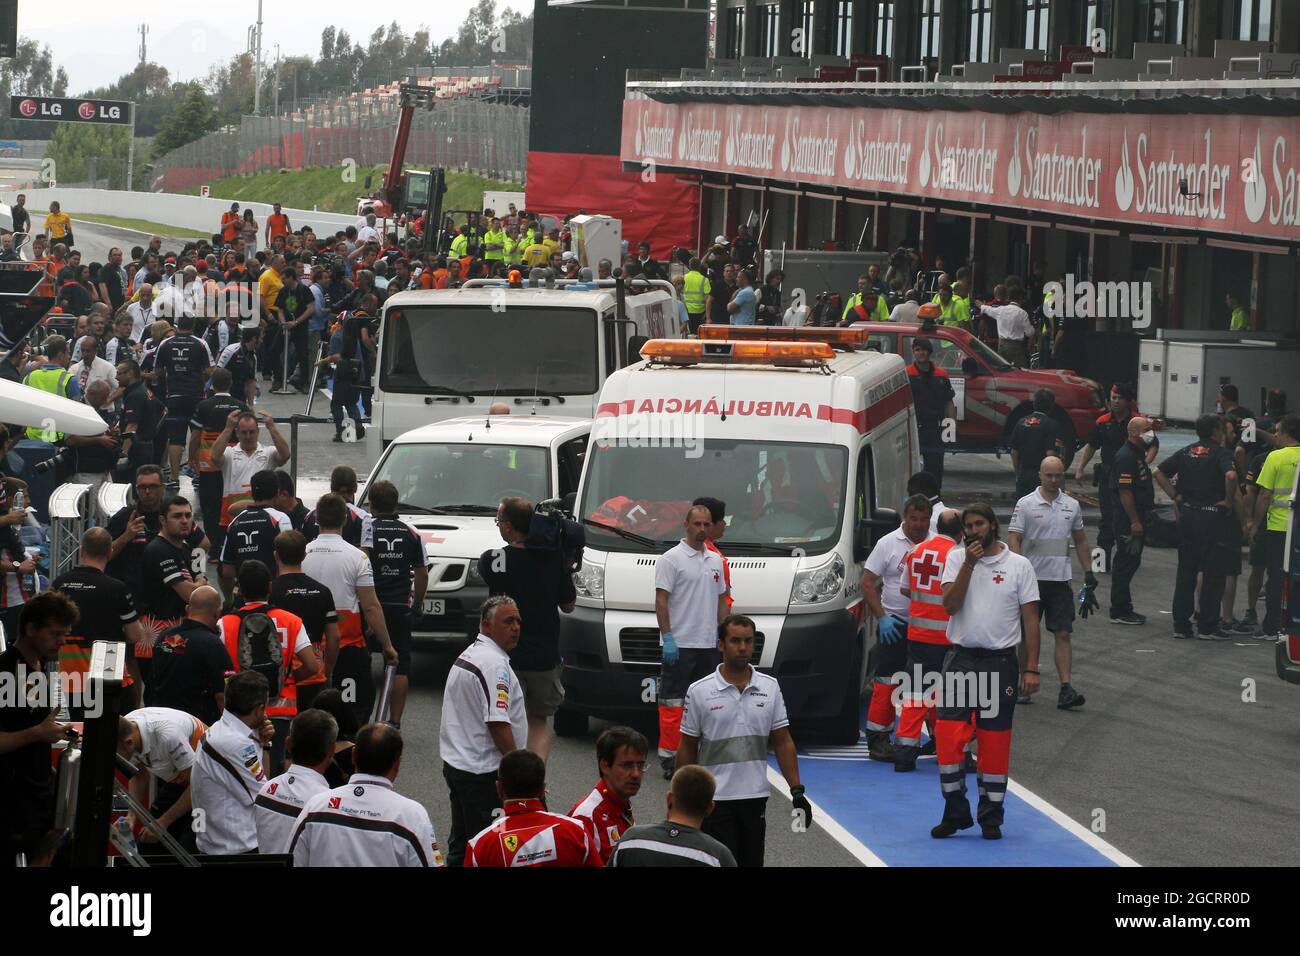 Les ambulances tendent à la scène après un feu de post-course dans le garage de la fosse Williams. Grand Prix d'Espagne, dimanche 13 mai 2012. Barcelone, Espagne. Banque D'Images